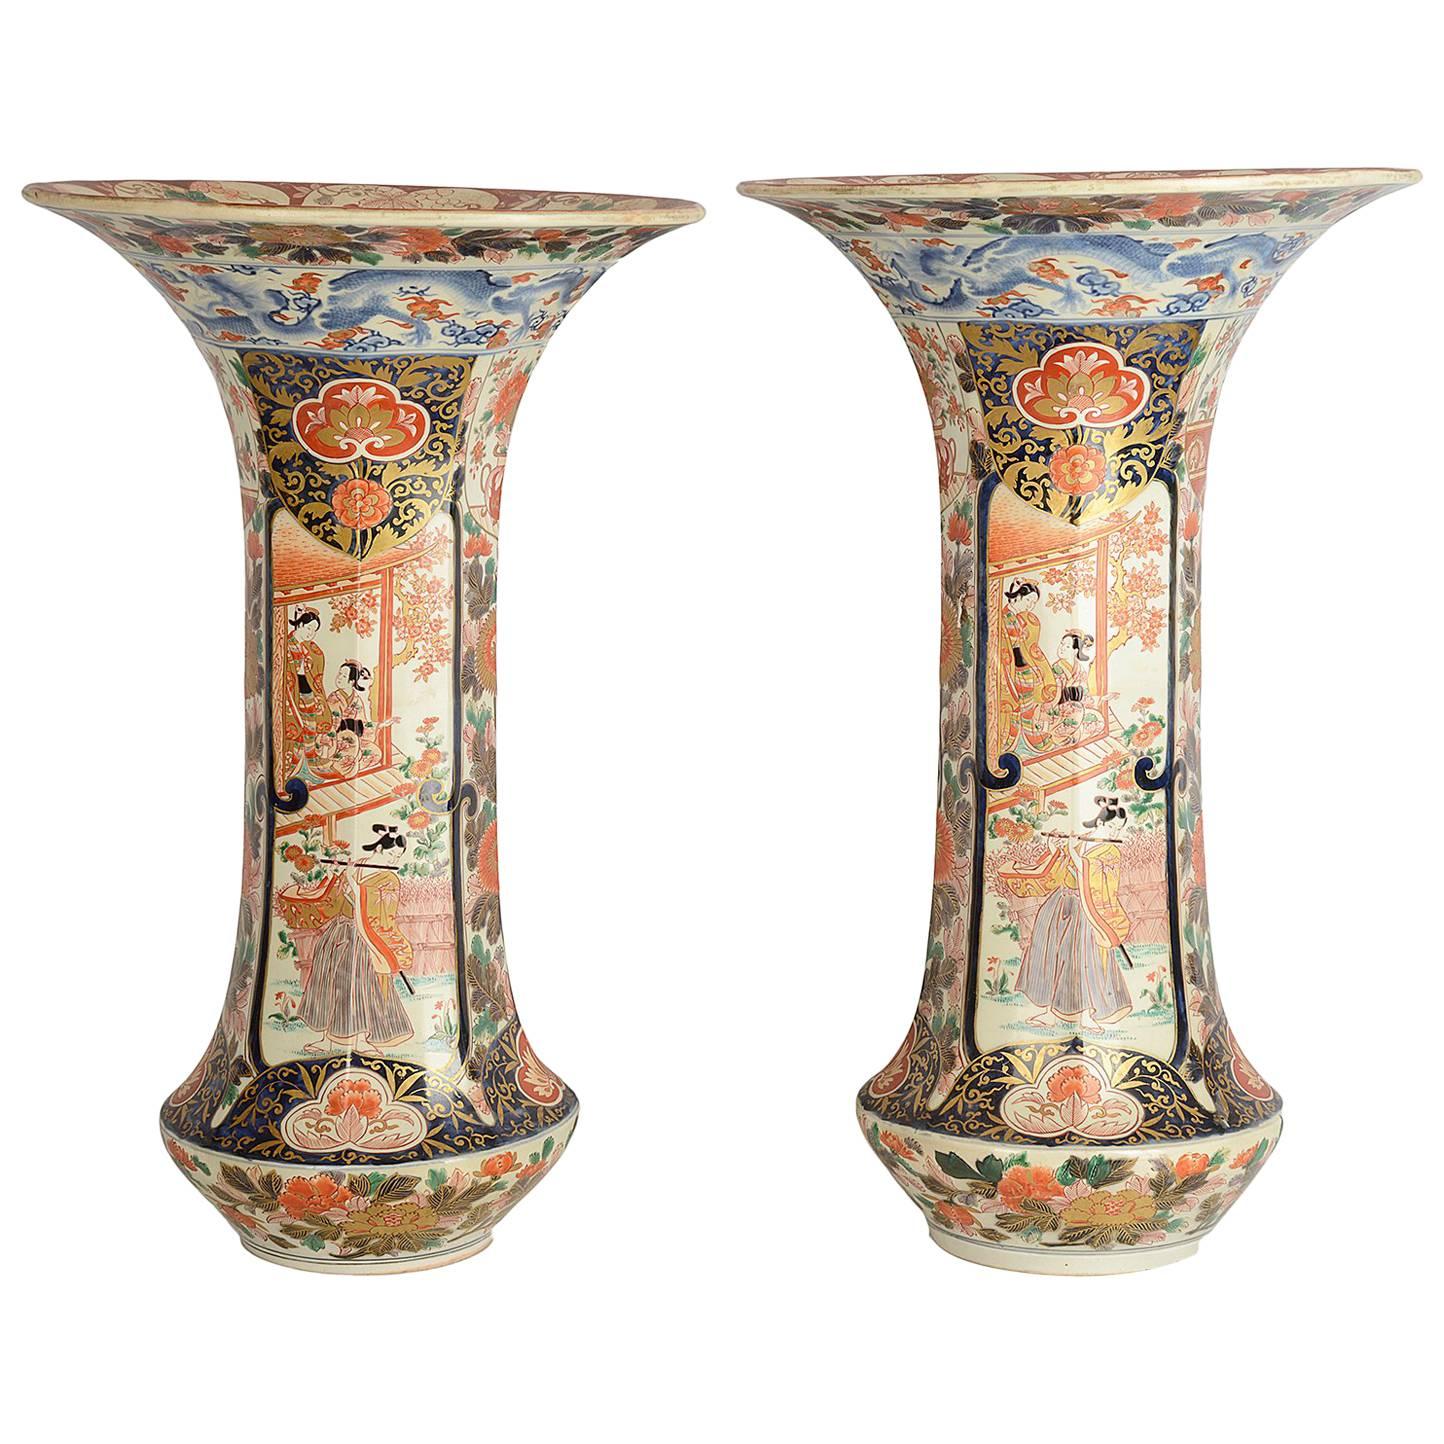 Paar japanische Imari-Vasen im Stil des 18. Jahrhunderts